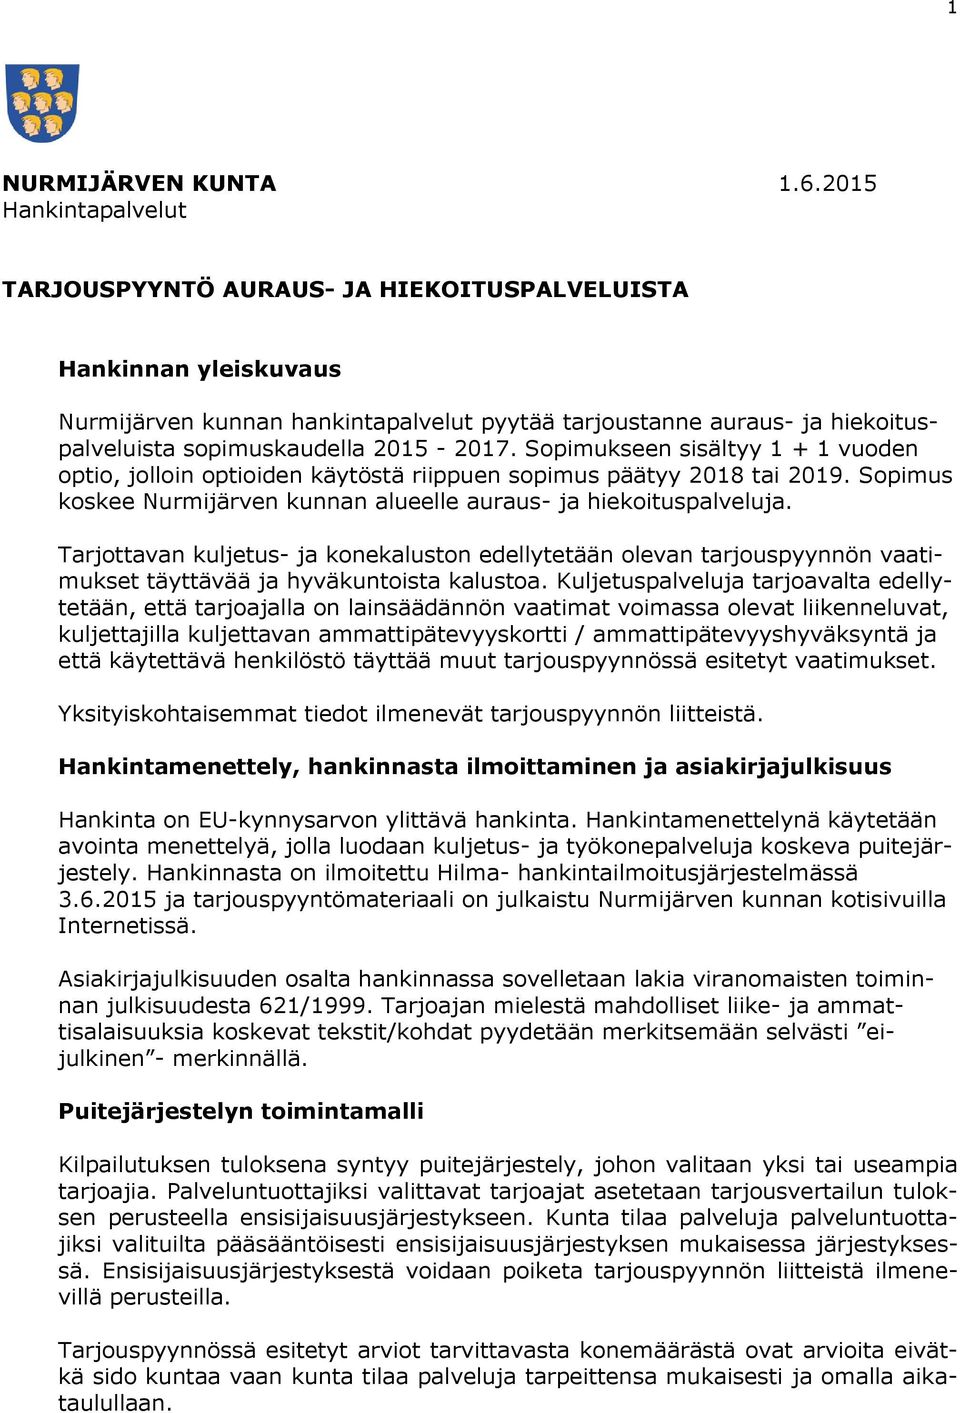 2015-2017. Sopimukseen sisältyy 1 + 1 vuoden optio, jolloin optioiden käytöstä riippuen sopimus päätyy 2018 tai 2019. Sopimus koskee Nurmijärven kunnan alueelle auraus- ja hiekoituspalveluja.